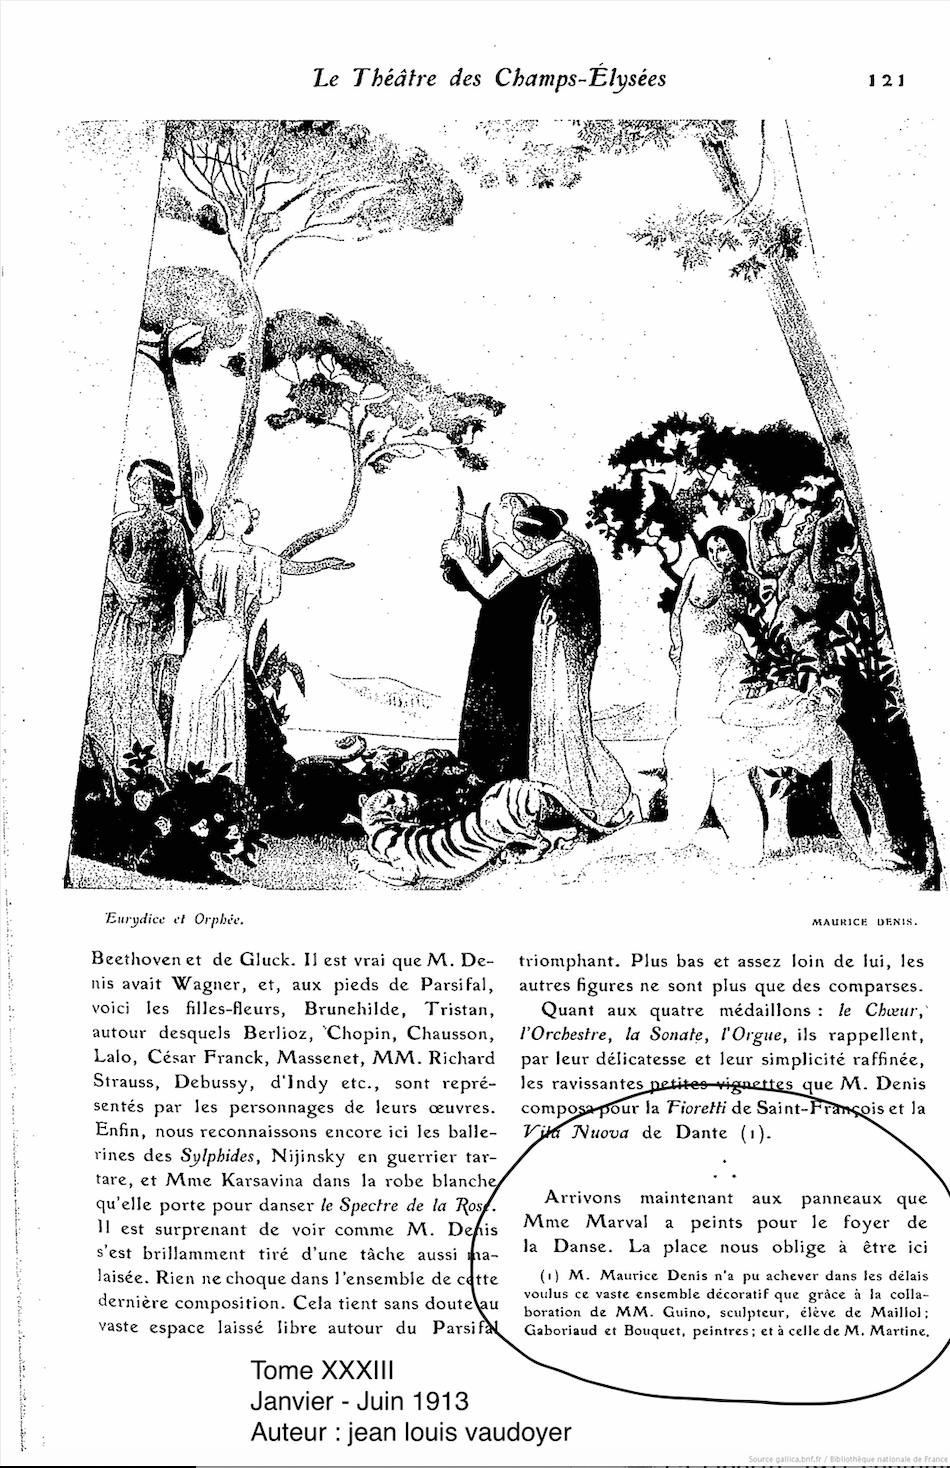 Art et Décoration, n°33, Janvier-Juin 1913 (Copy)